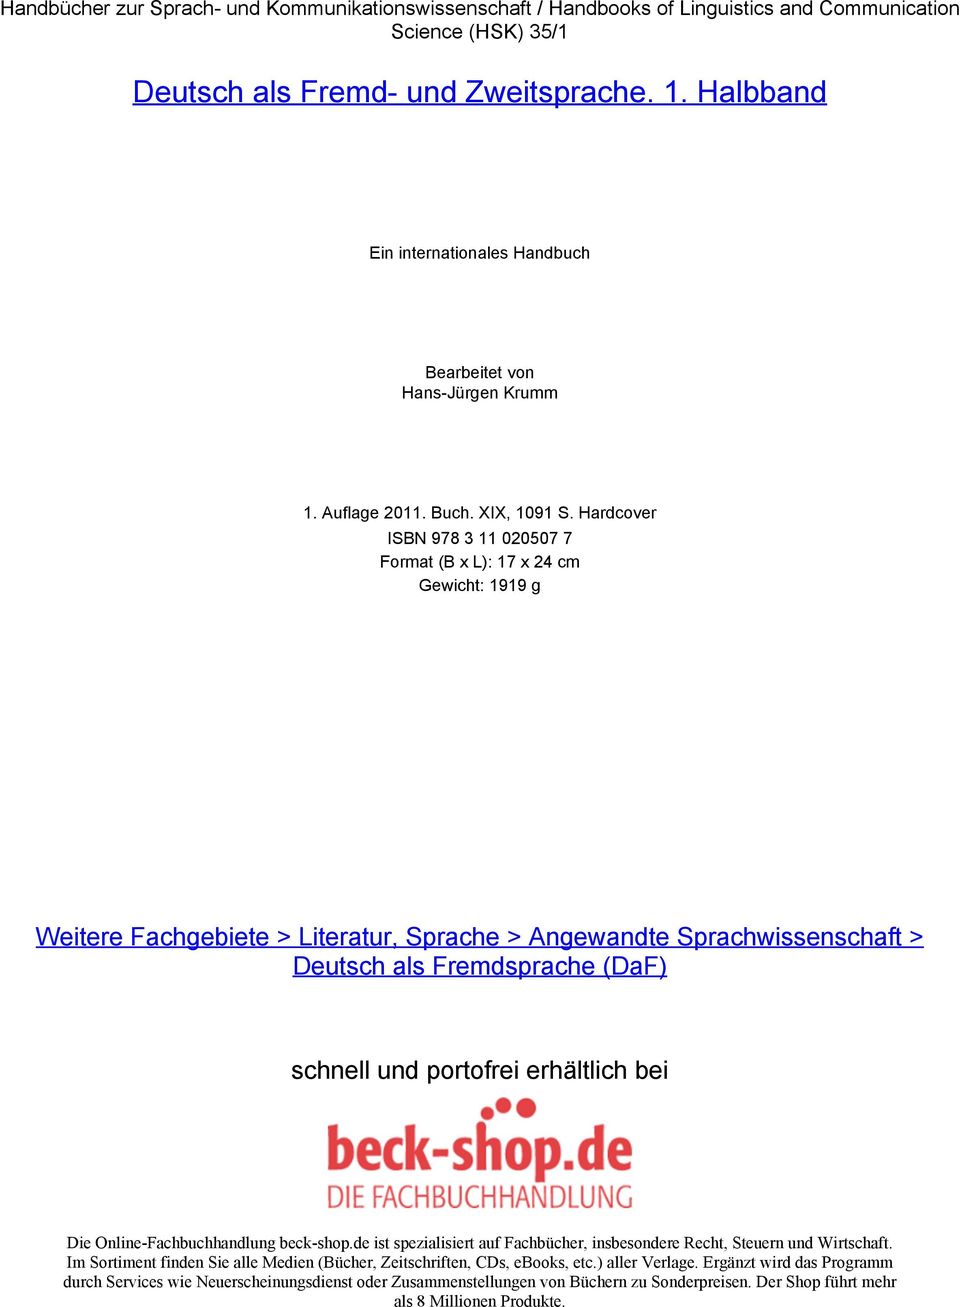 Hardcover ISBN 978 3 11 020507 7 Format (B x L): 17 x 24 cm Gewicht: 1919 g Weitere Fachgebiete > Literatur, Sprache > Angewandte Sprachwissenschaft > Deutsch als Fremdsprache (DaF) schnell und